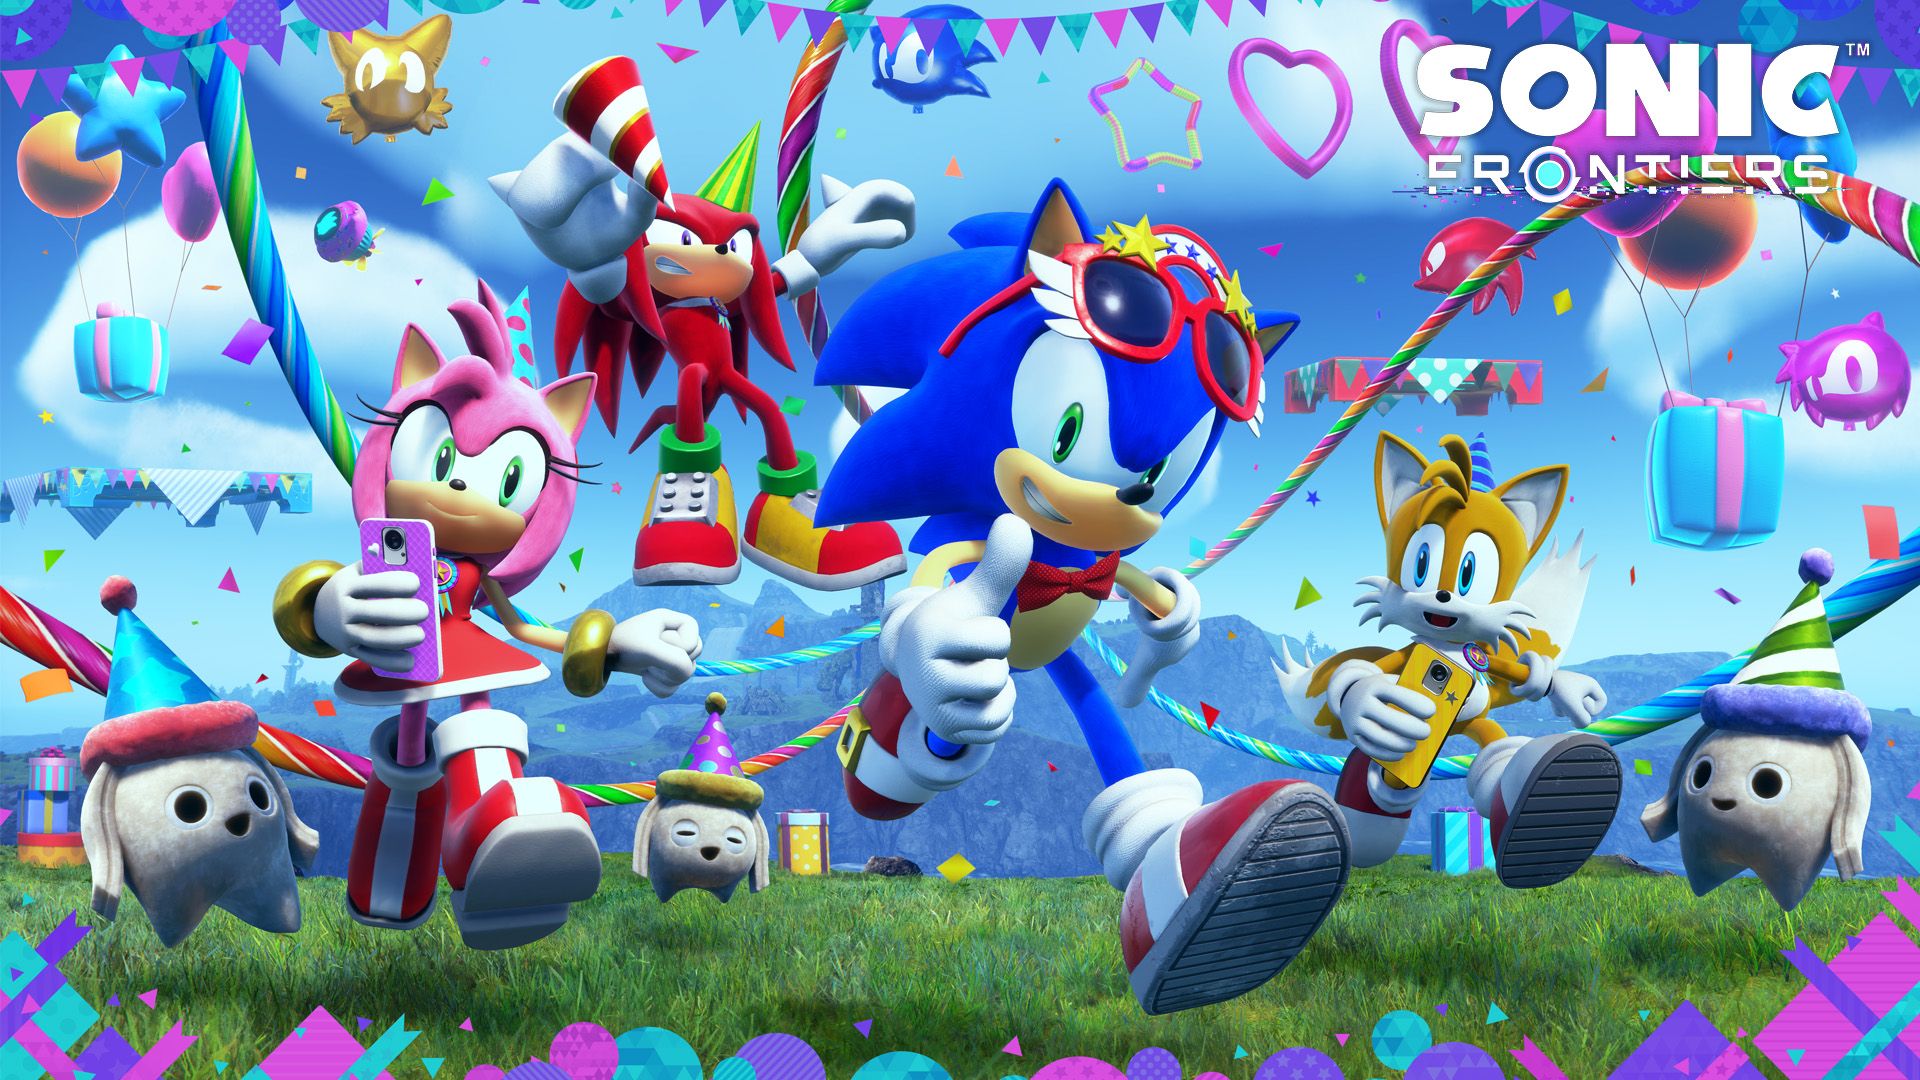 Sonic festeggia il compleanno in Frontier con un DLC gratuito - Gamesurf